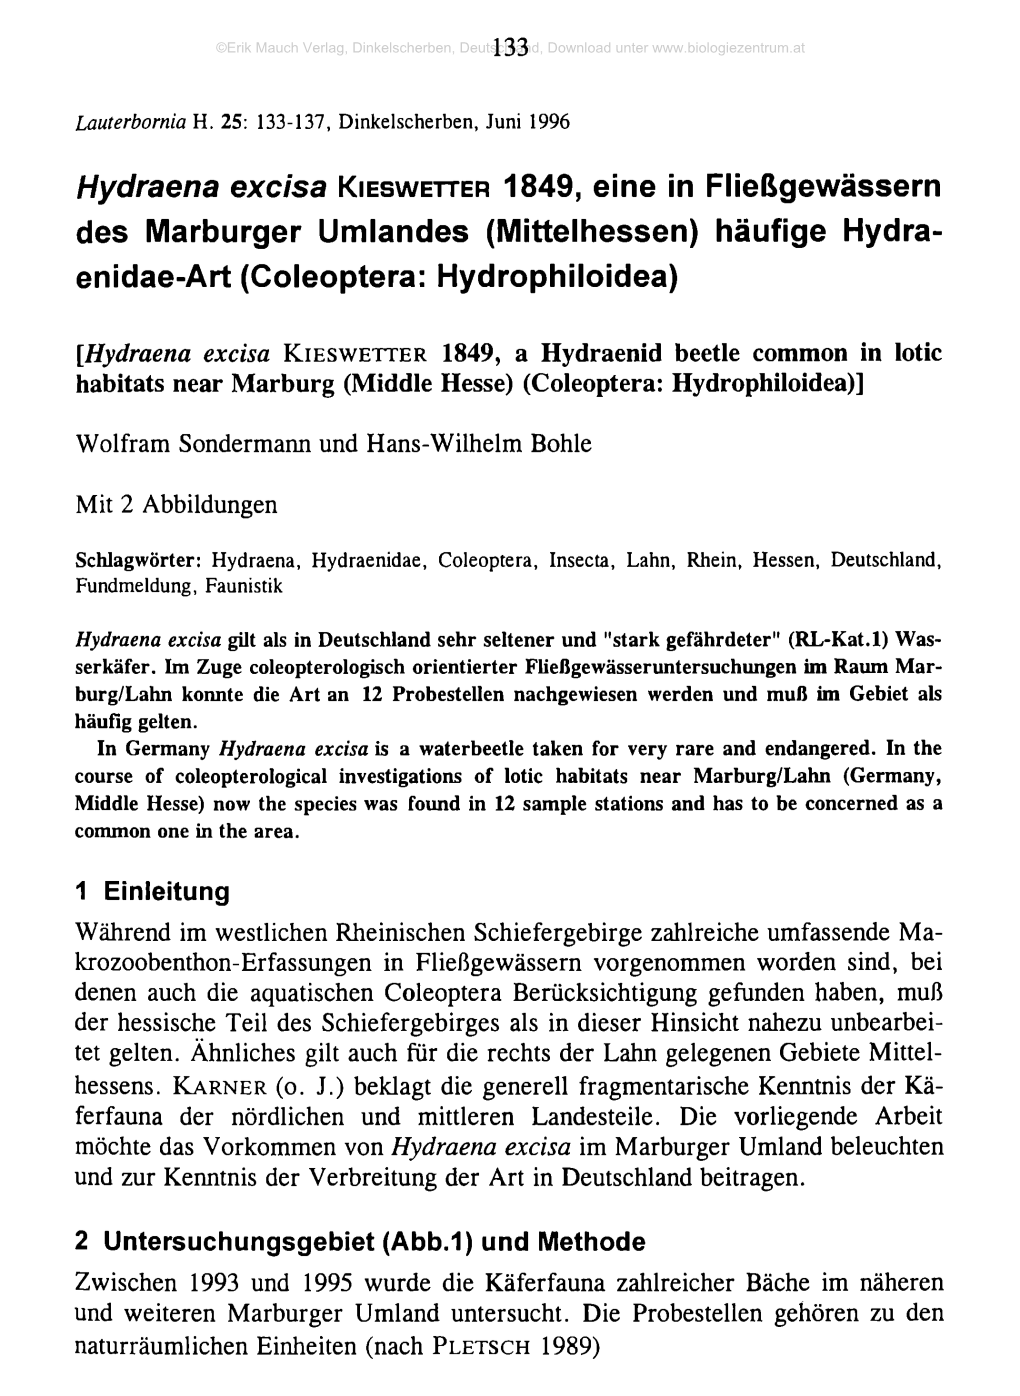 1849, Eine in Fließgewässern Des Marburger Umlandes (Mittelhessen) Häufige Hydra- Enidae-Art (Coleoptera: Hydrophiloidea)